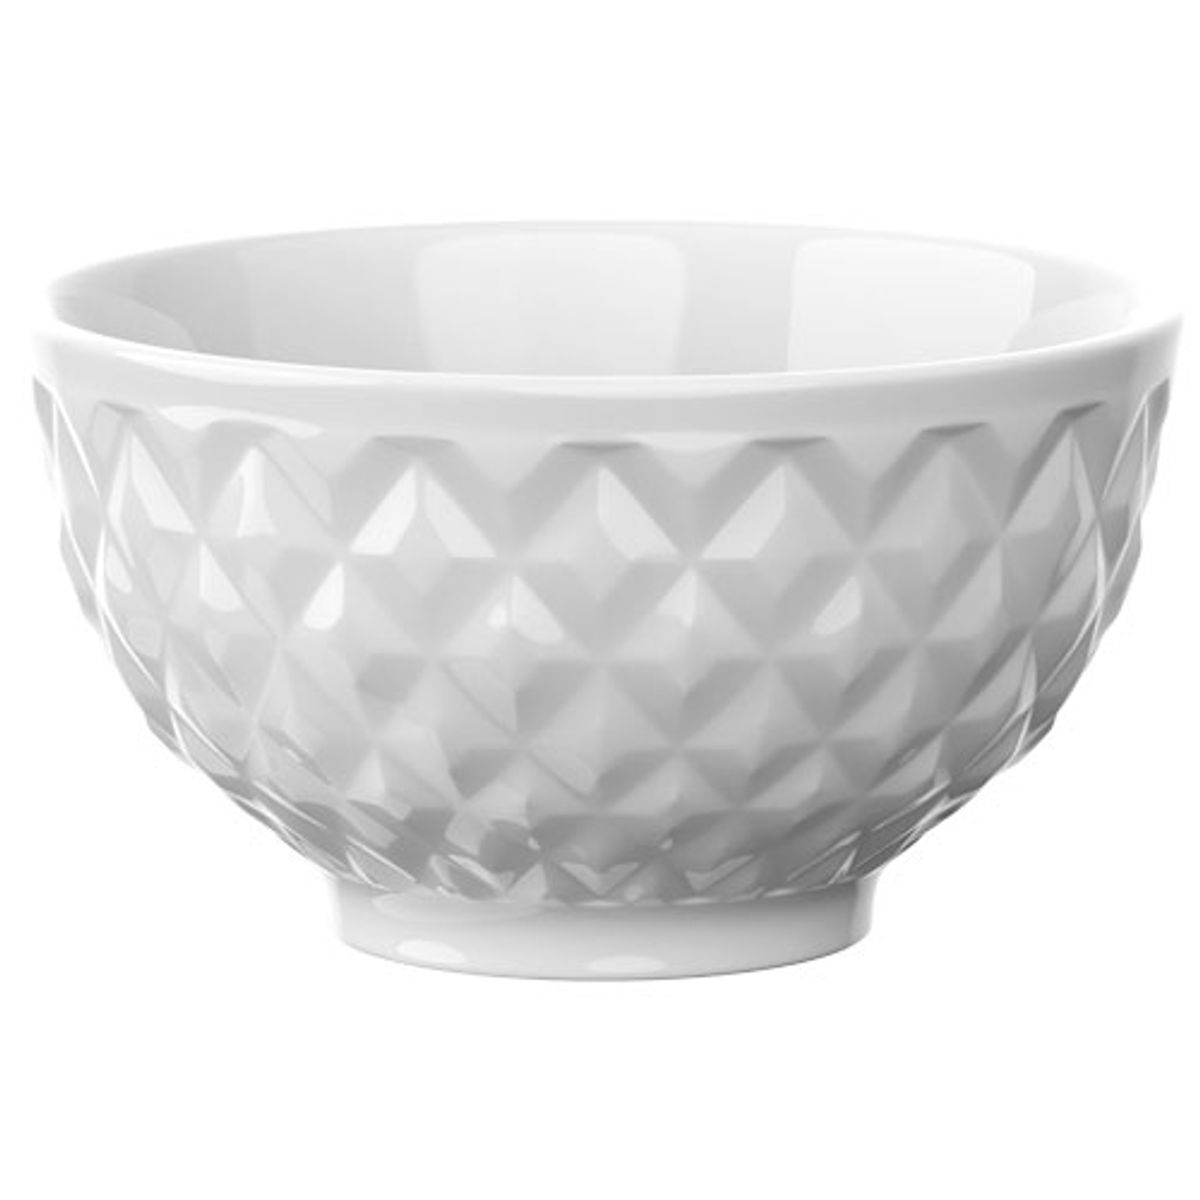 Bowl de Porcelana Dynasty Branca 350ml image number 0